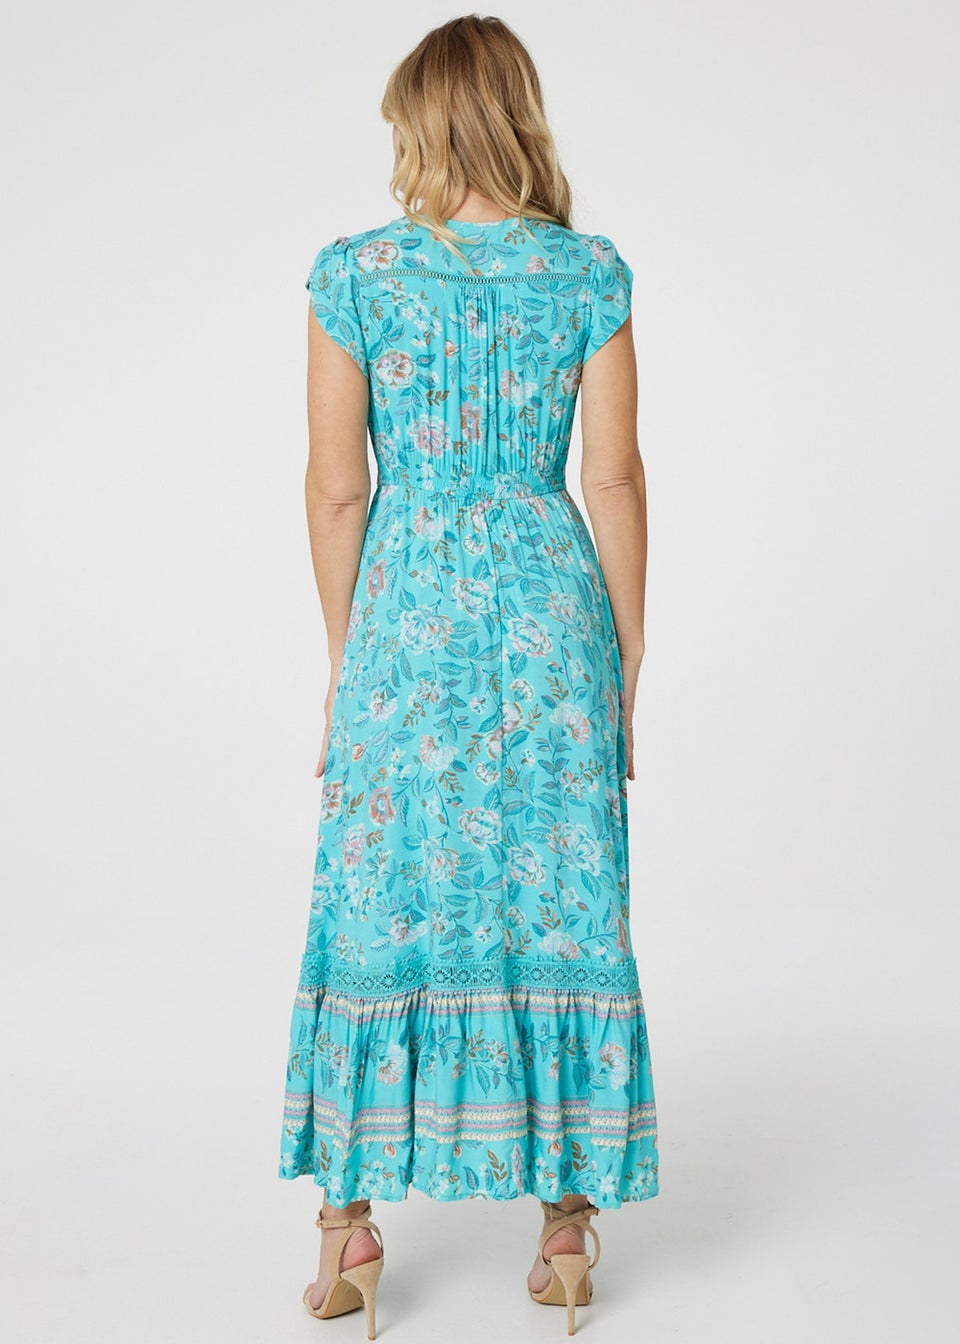 Izabel London Blue Floral Border Print V-Neck Dress